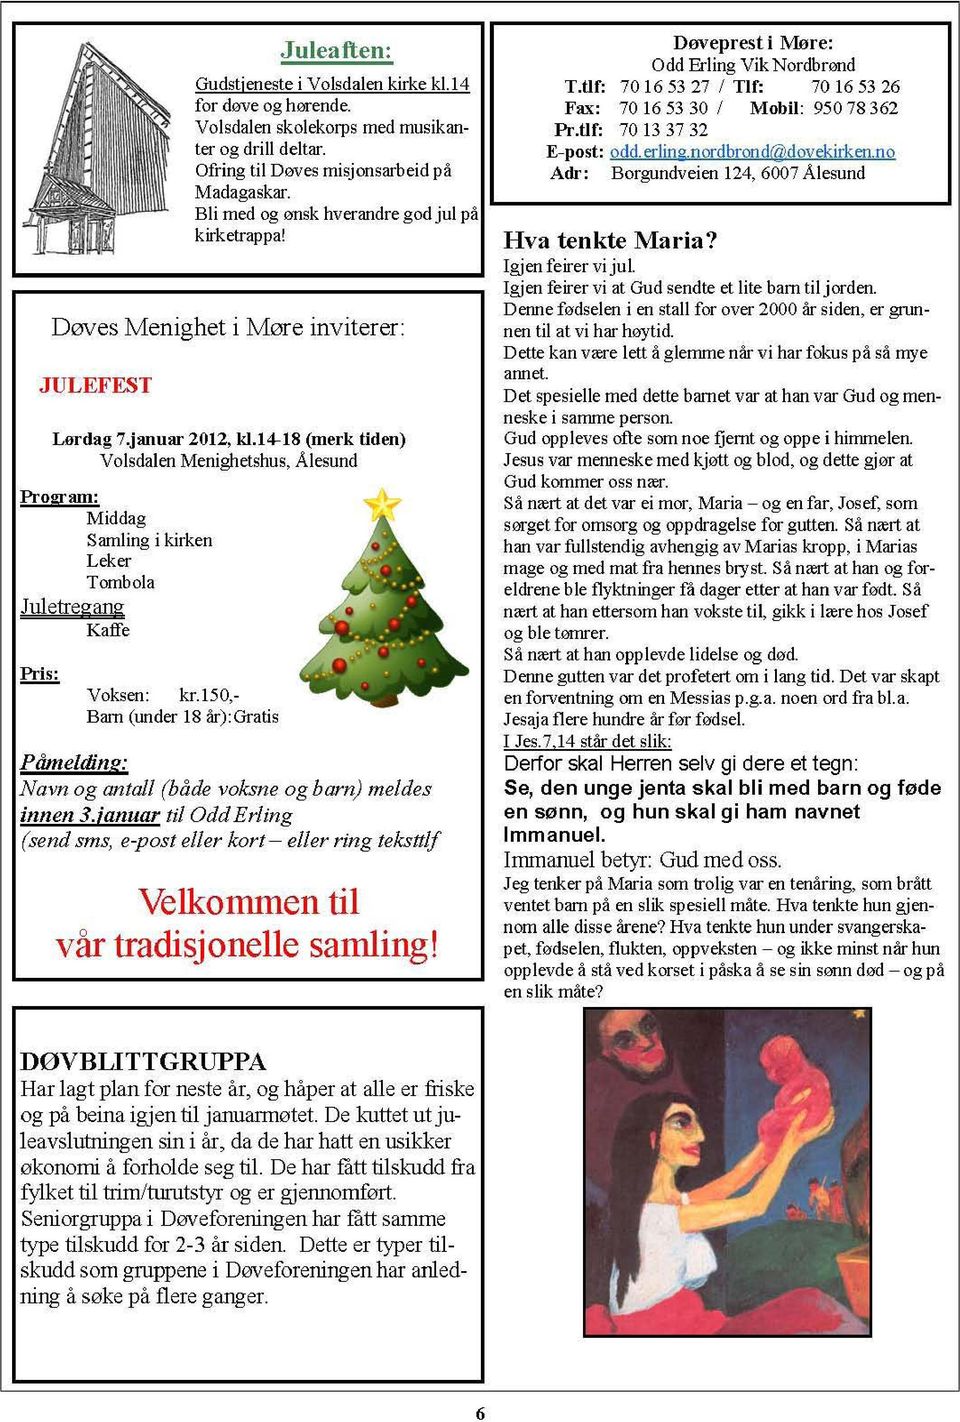 14-18 (merk tiden) Volsdalen Menighetshus, Alesund Program: Middag Samling i kirken Leker Tombola Juletregang Kaffe Voksen: kr.